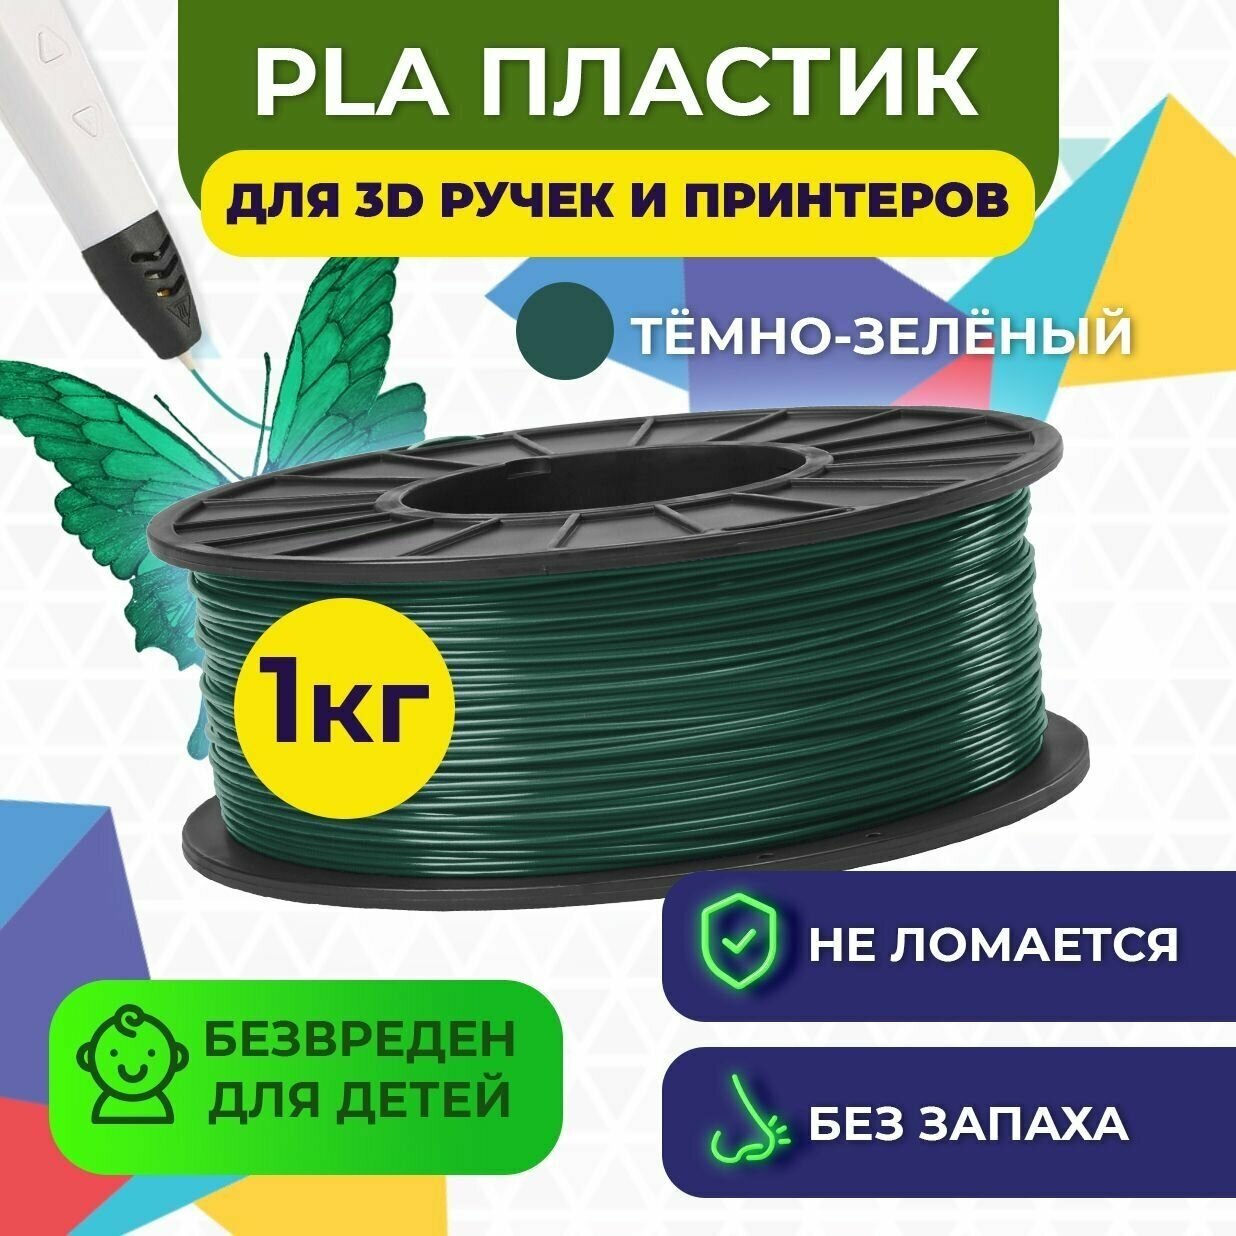 Пластик для 3D печати в катушке Funtastique (PLA1751 кг) (темно-зеленый)  пластик для 3д принтера